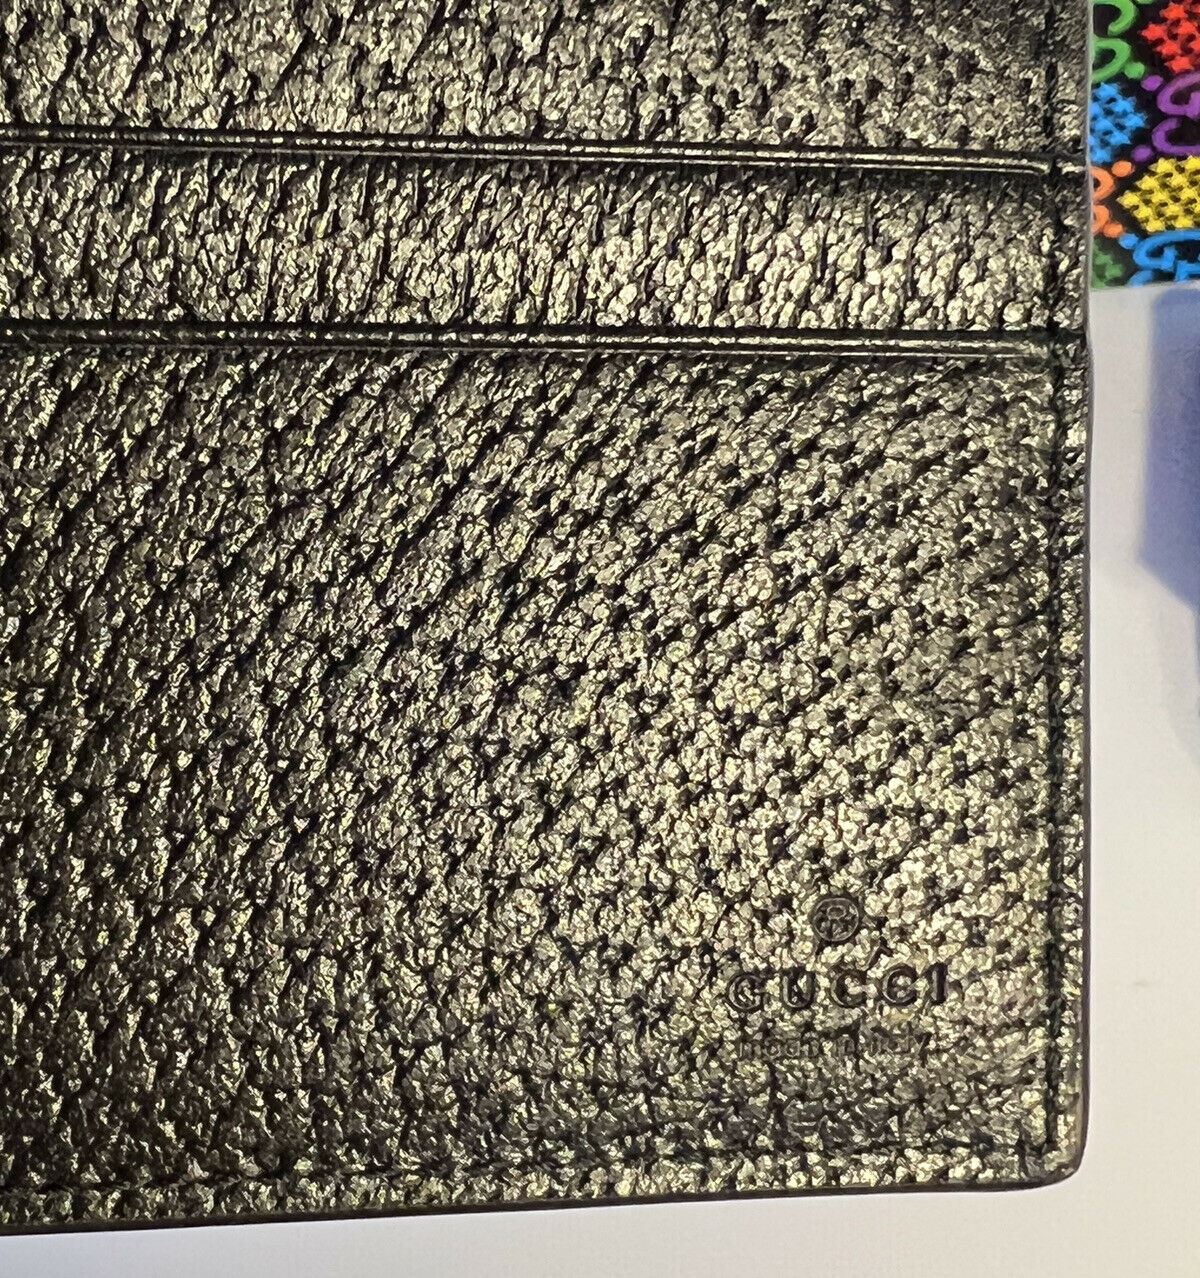 NWT Gucci GG Психоделический кошелек двойного сложения, сделано в Италии 601089 